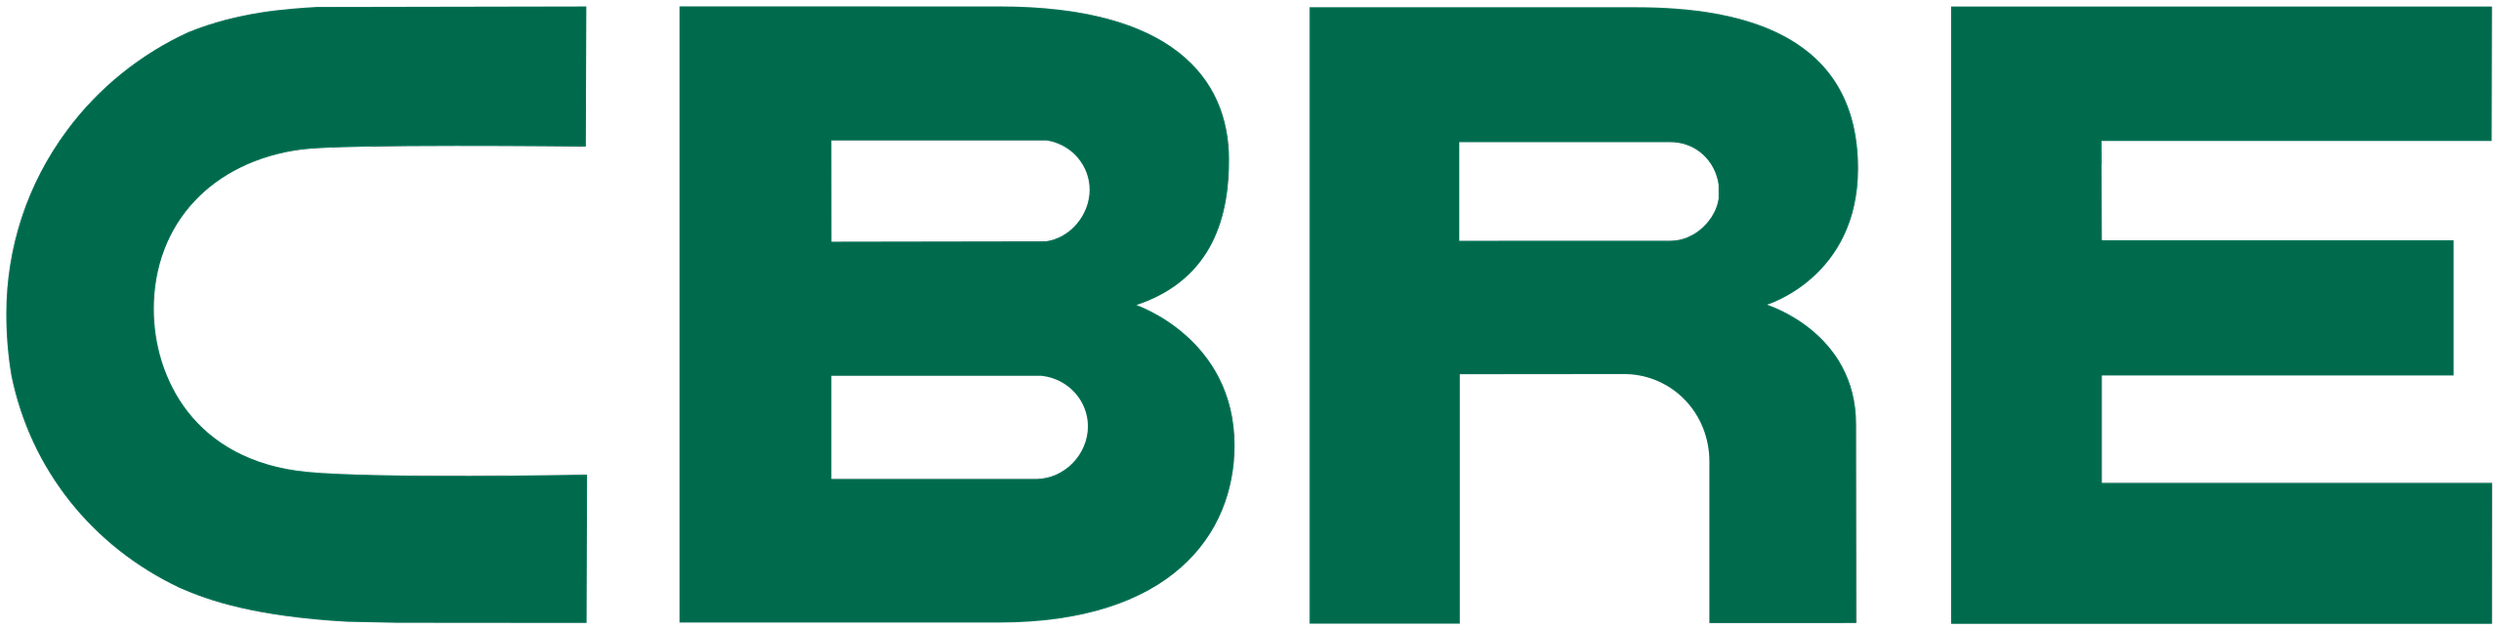 CBRE company logo